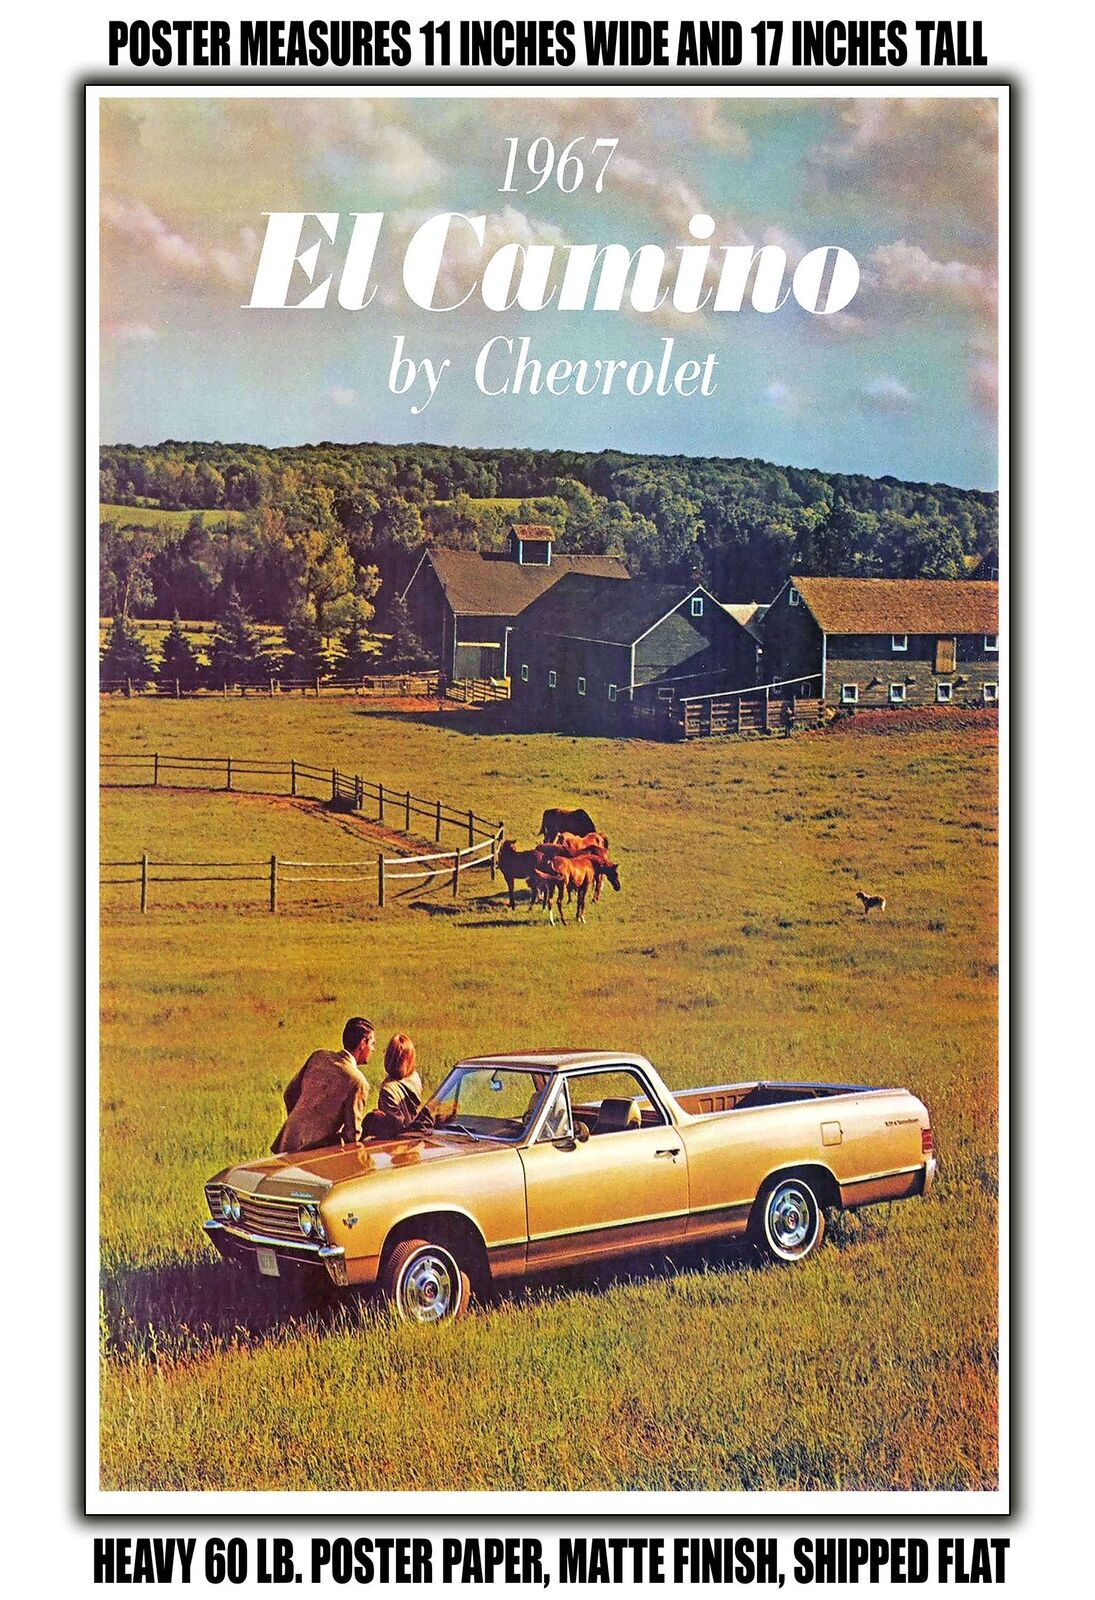 11x17 POSTER - 1967 Chevy El Camino